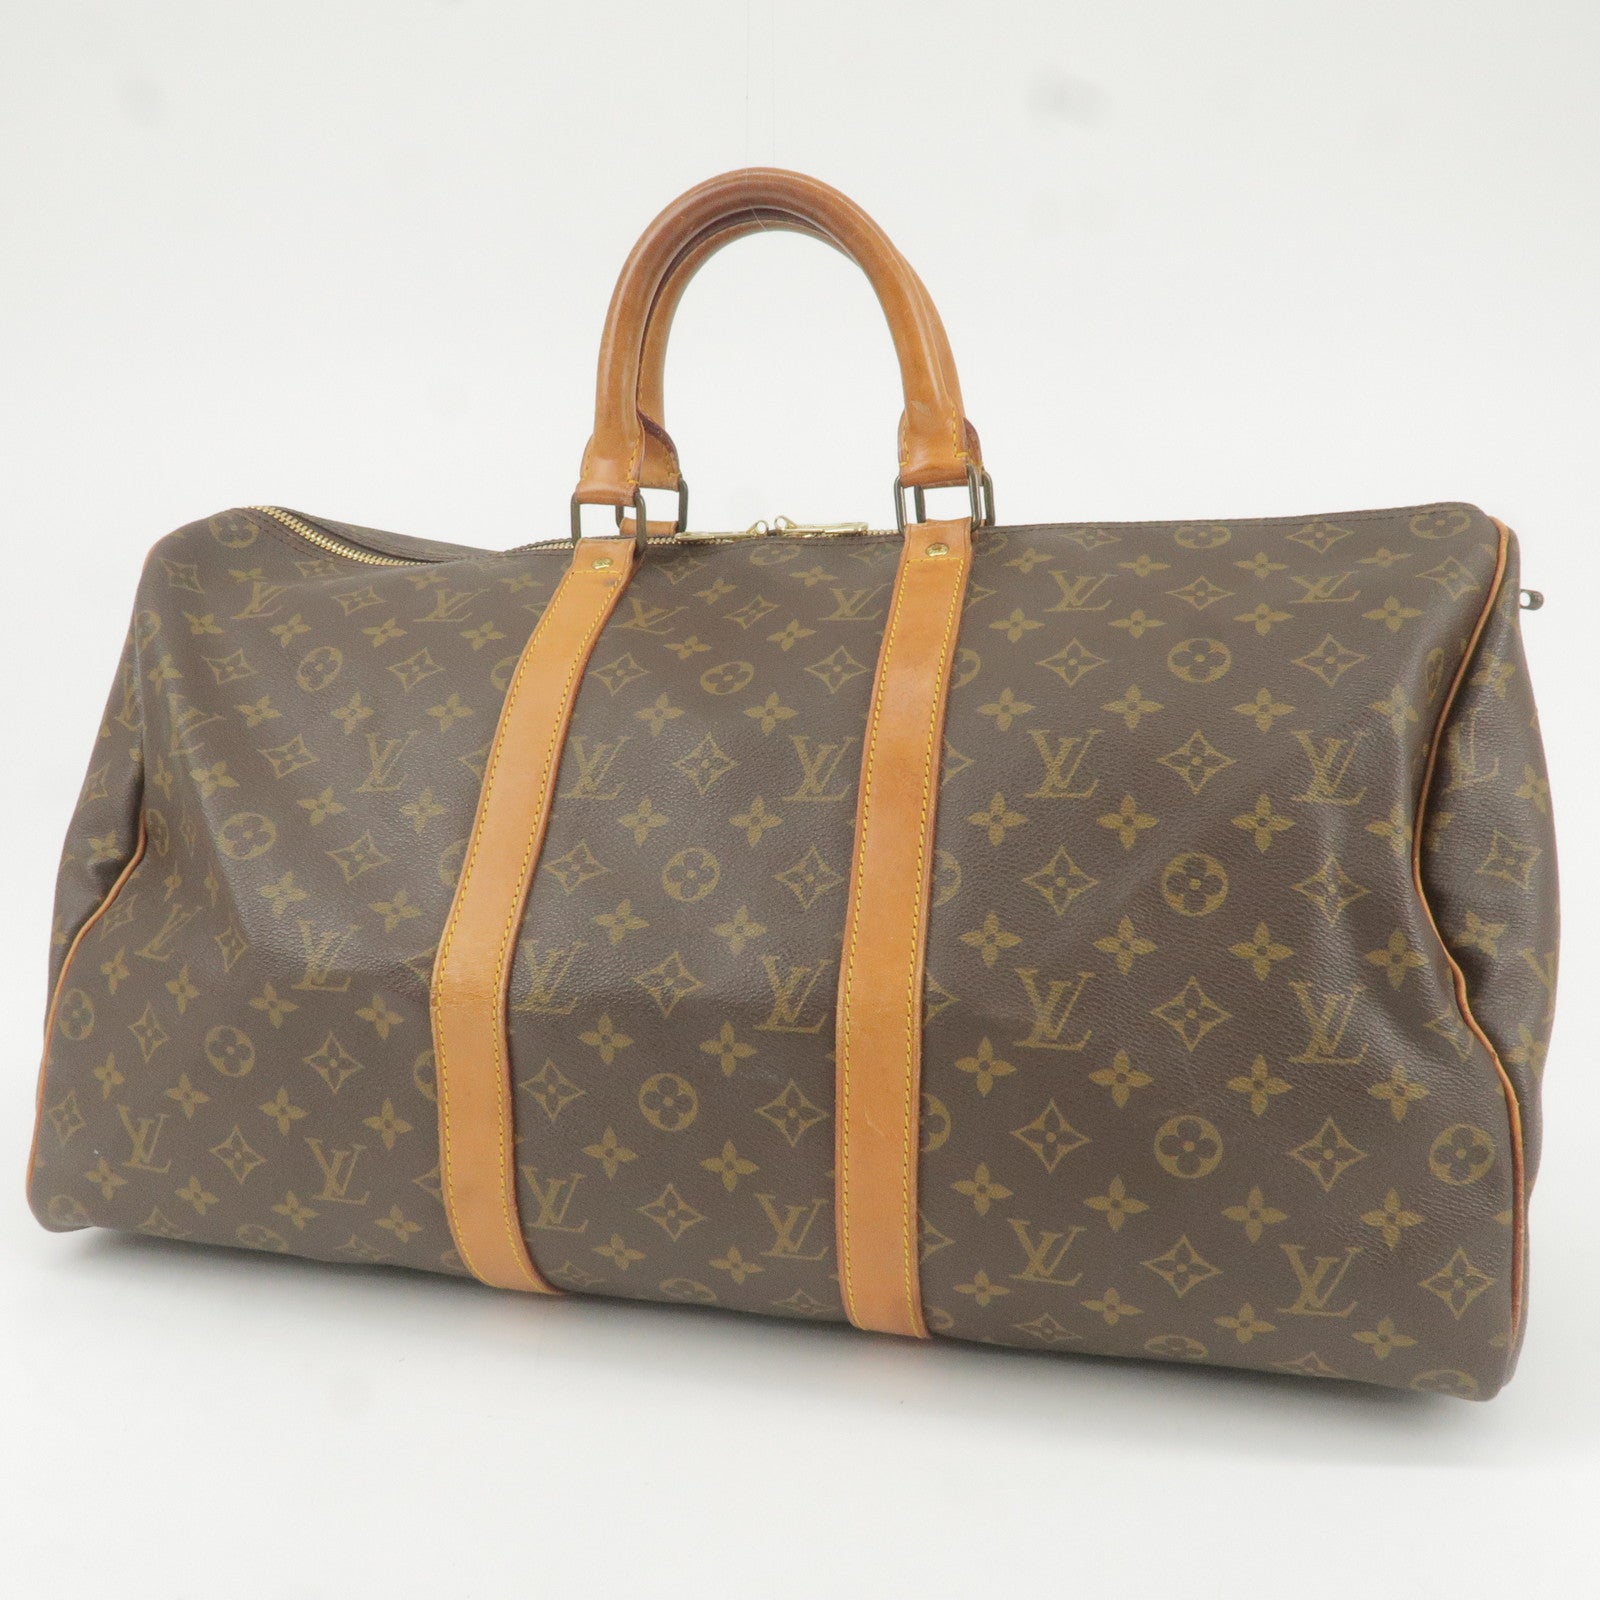 Vintage Louis Vuitton Bag Styles For Men's